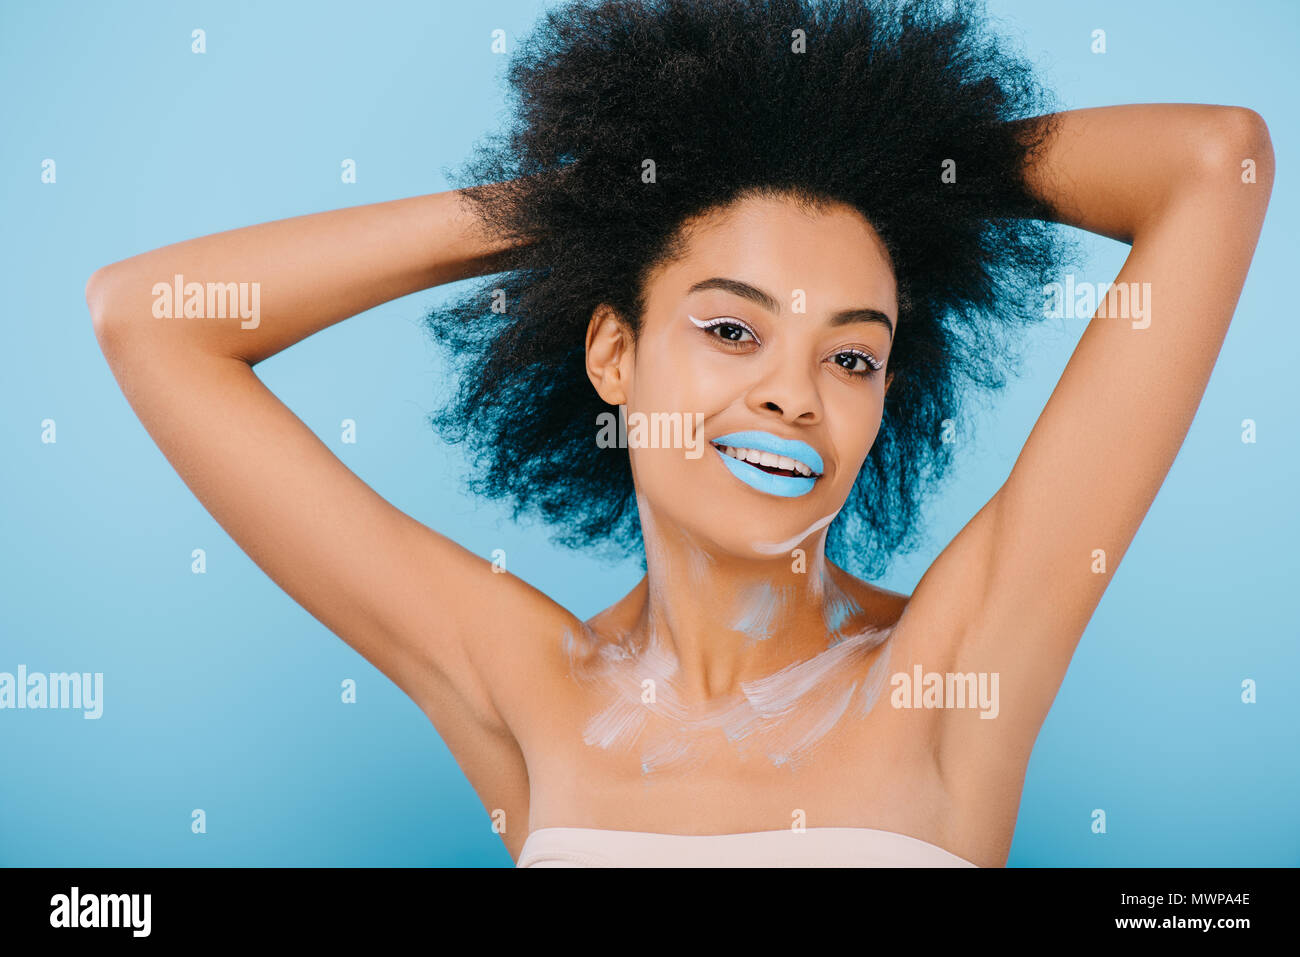 Happy young woman with creative et maquillage lèvres bleu sur bleu isolé Banque D'Images